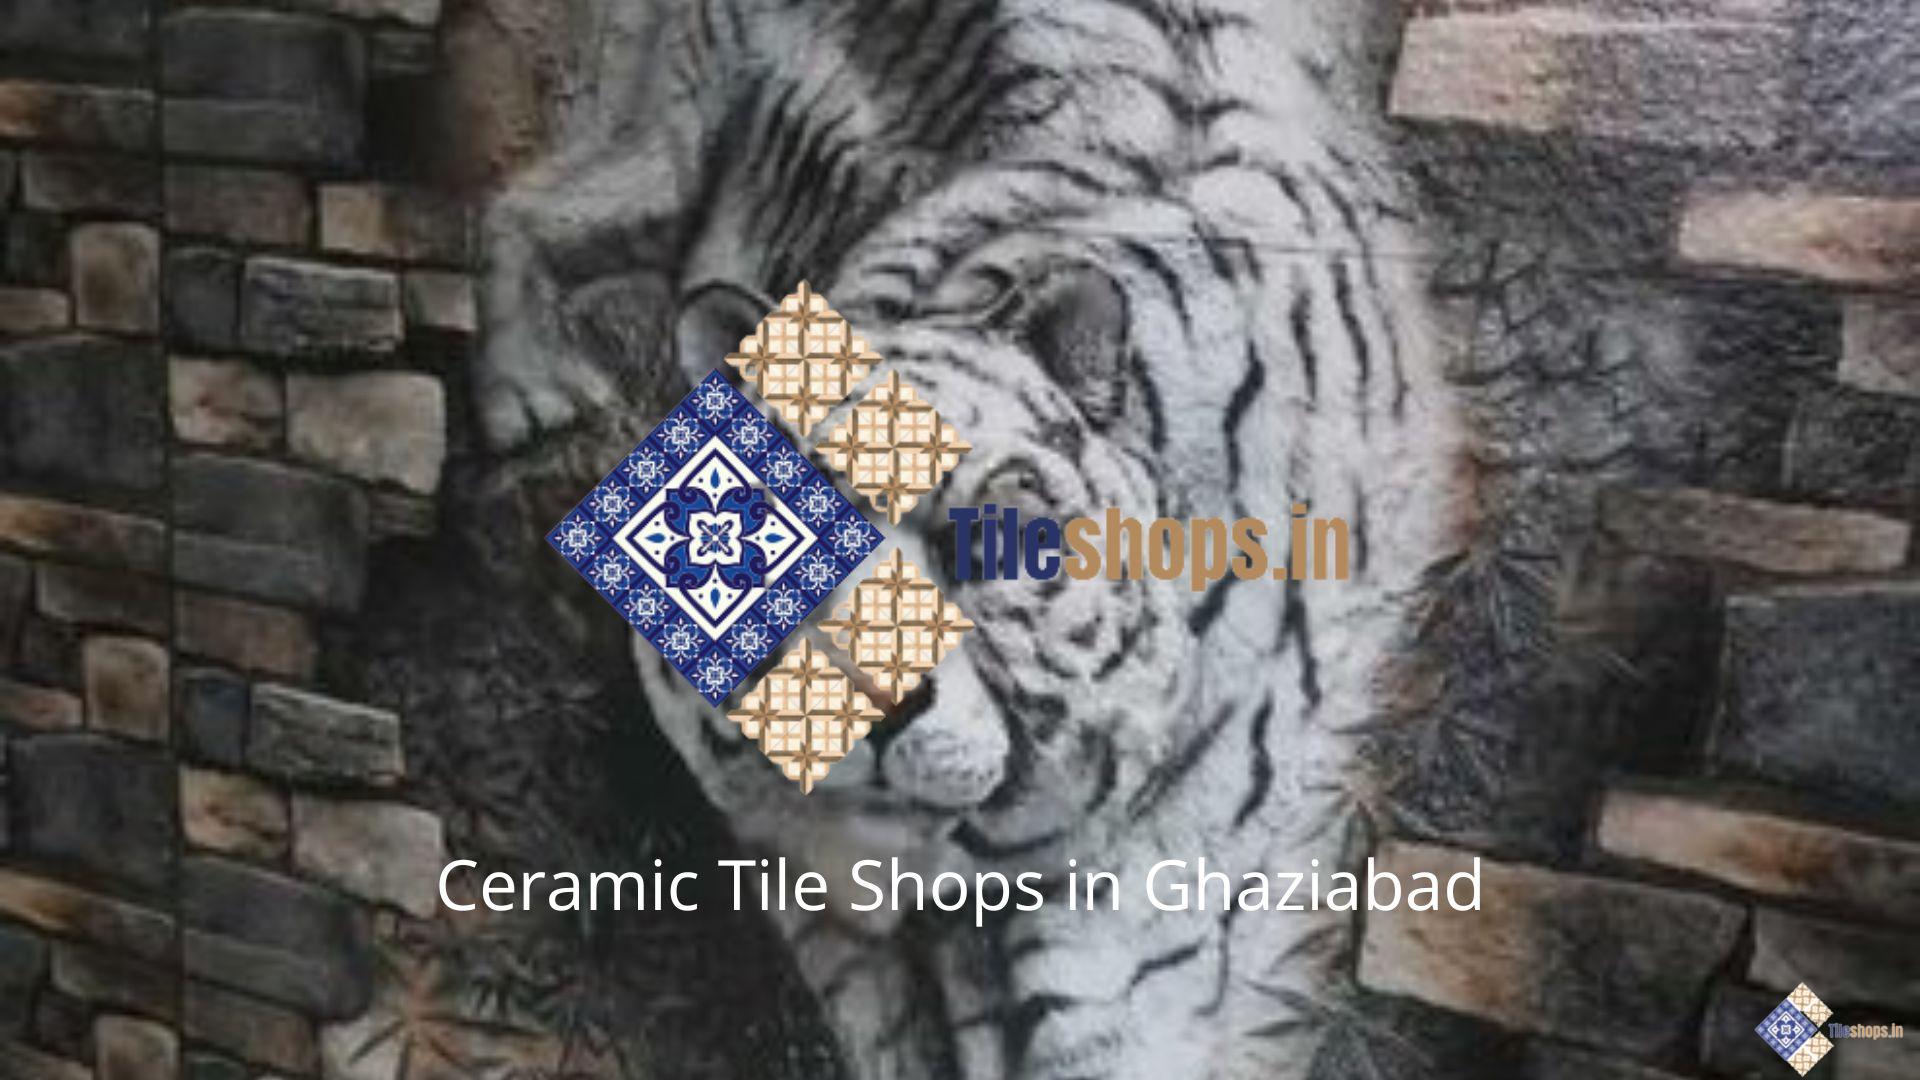 Ceramic Tile Shops in Ghaziabad